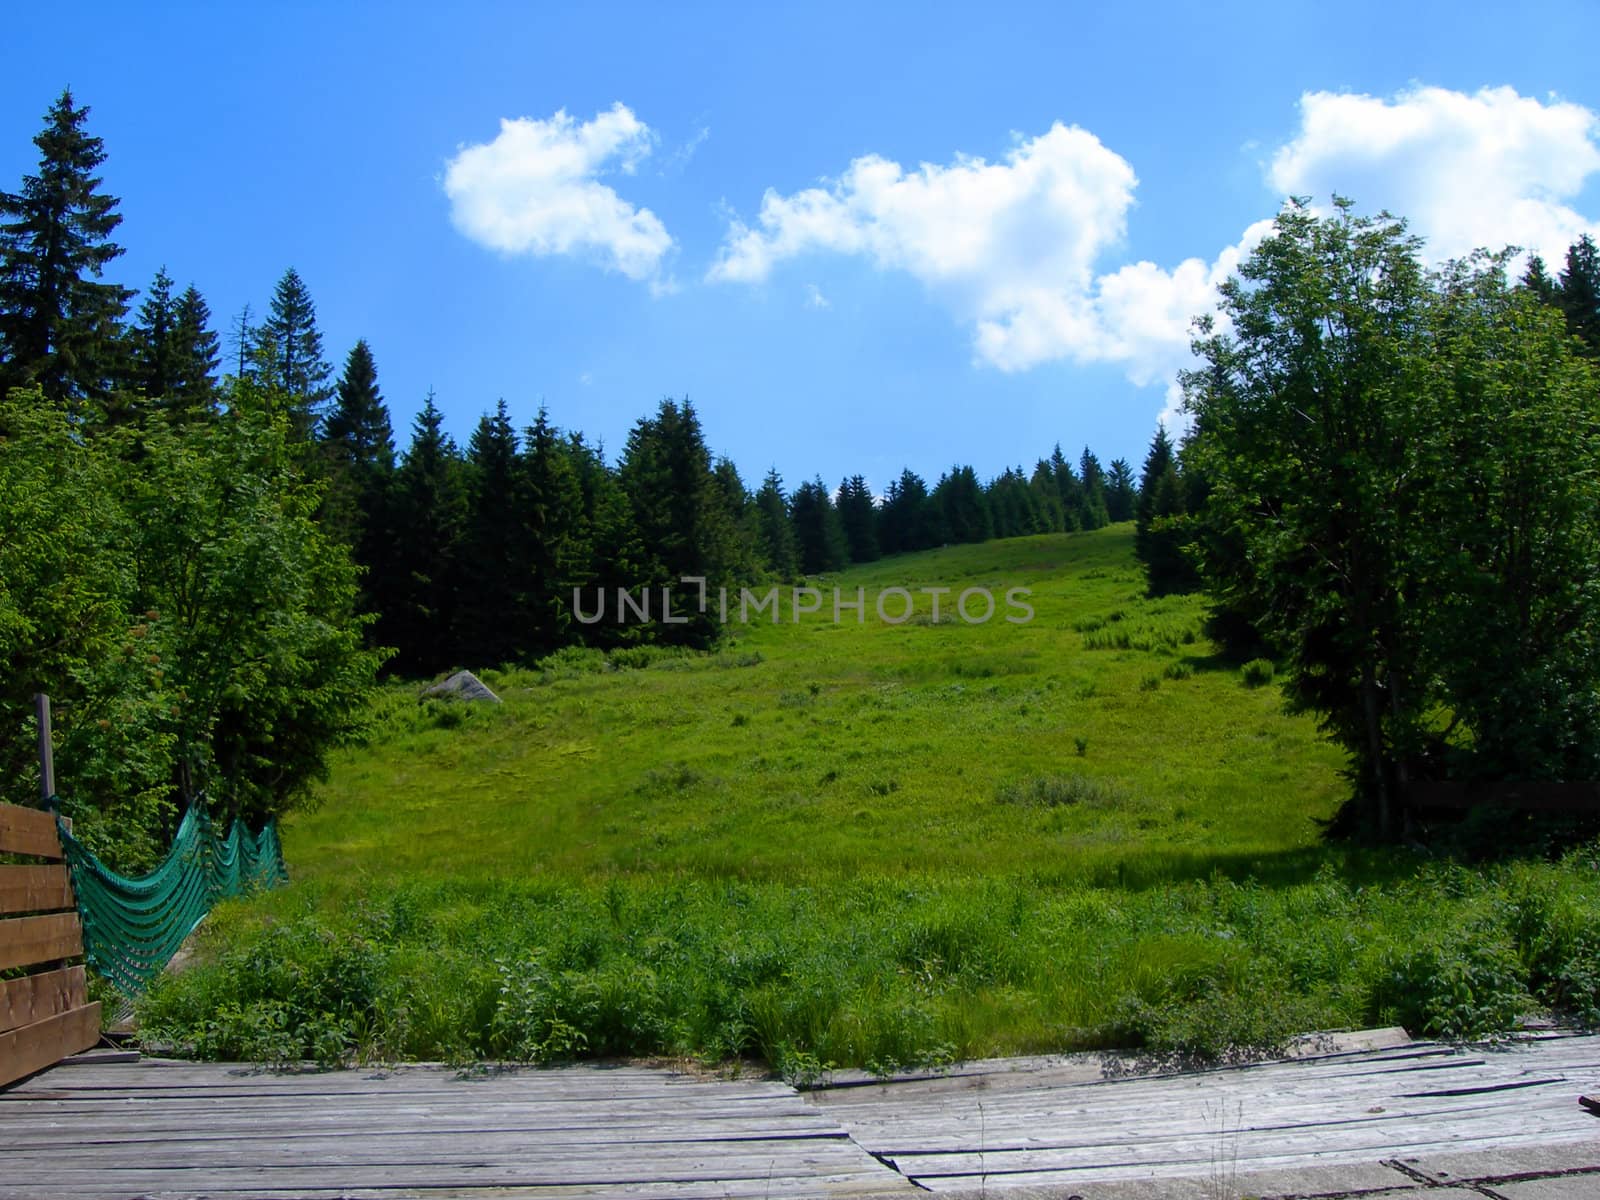 Ski slope in summer by drakodav